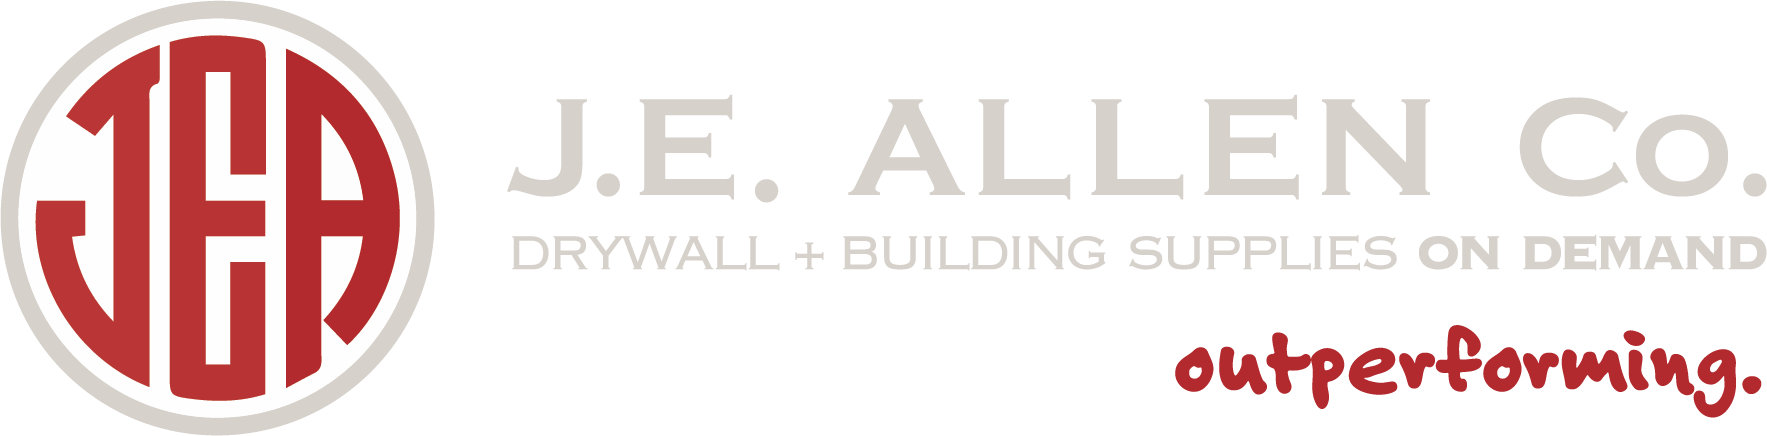 J. E. Allen logo